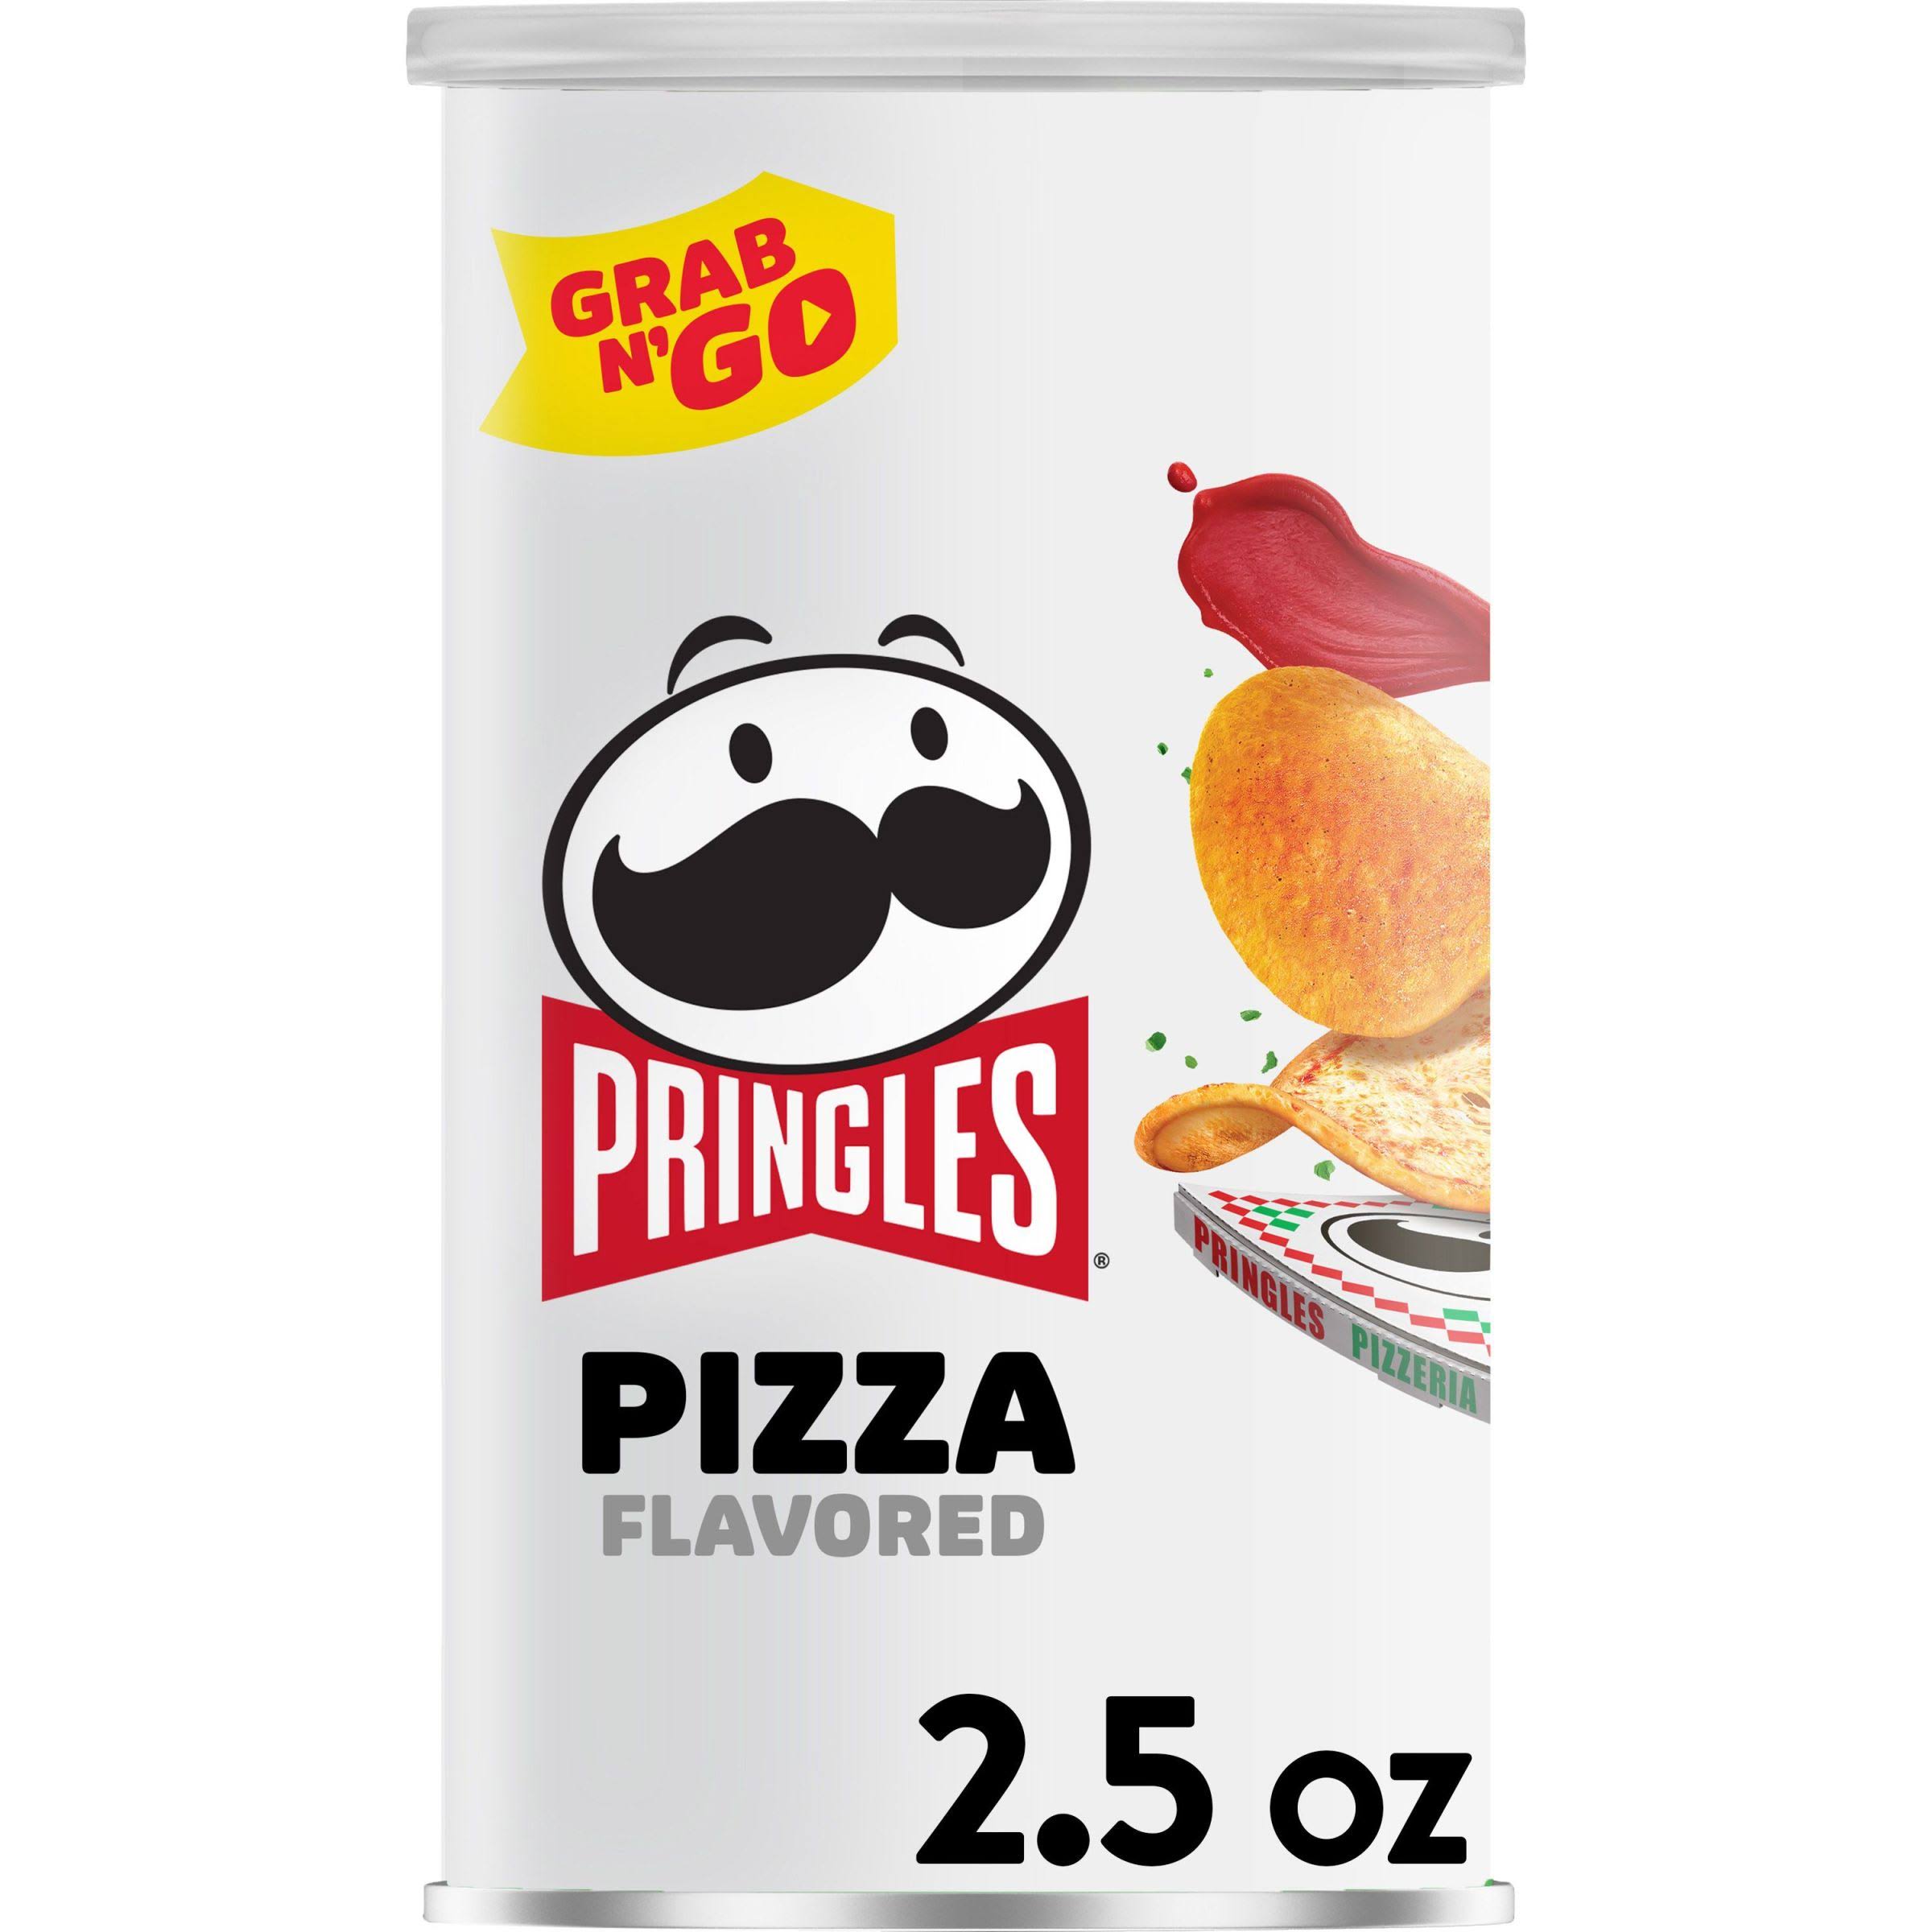 Pringles Potato Crisps, Pizza Flavored, Grab N' Go - 2.5 oz